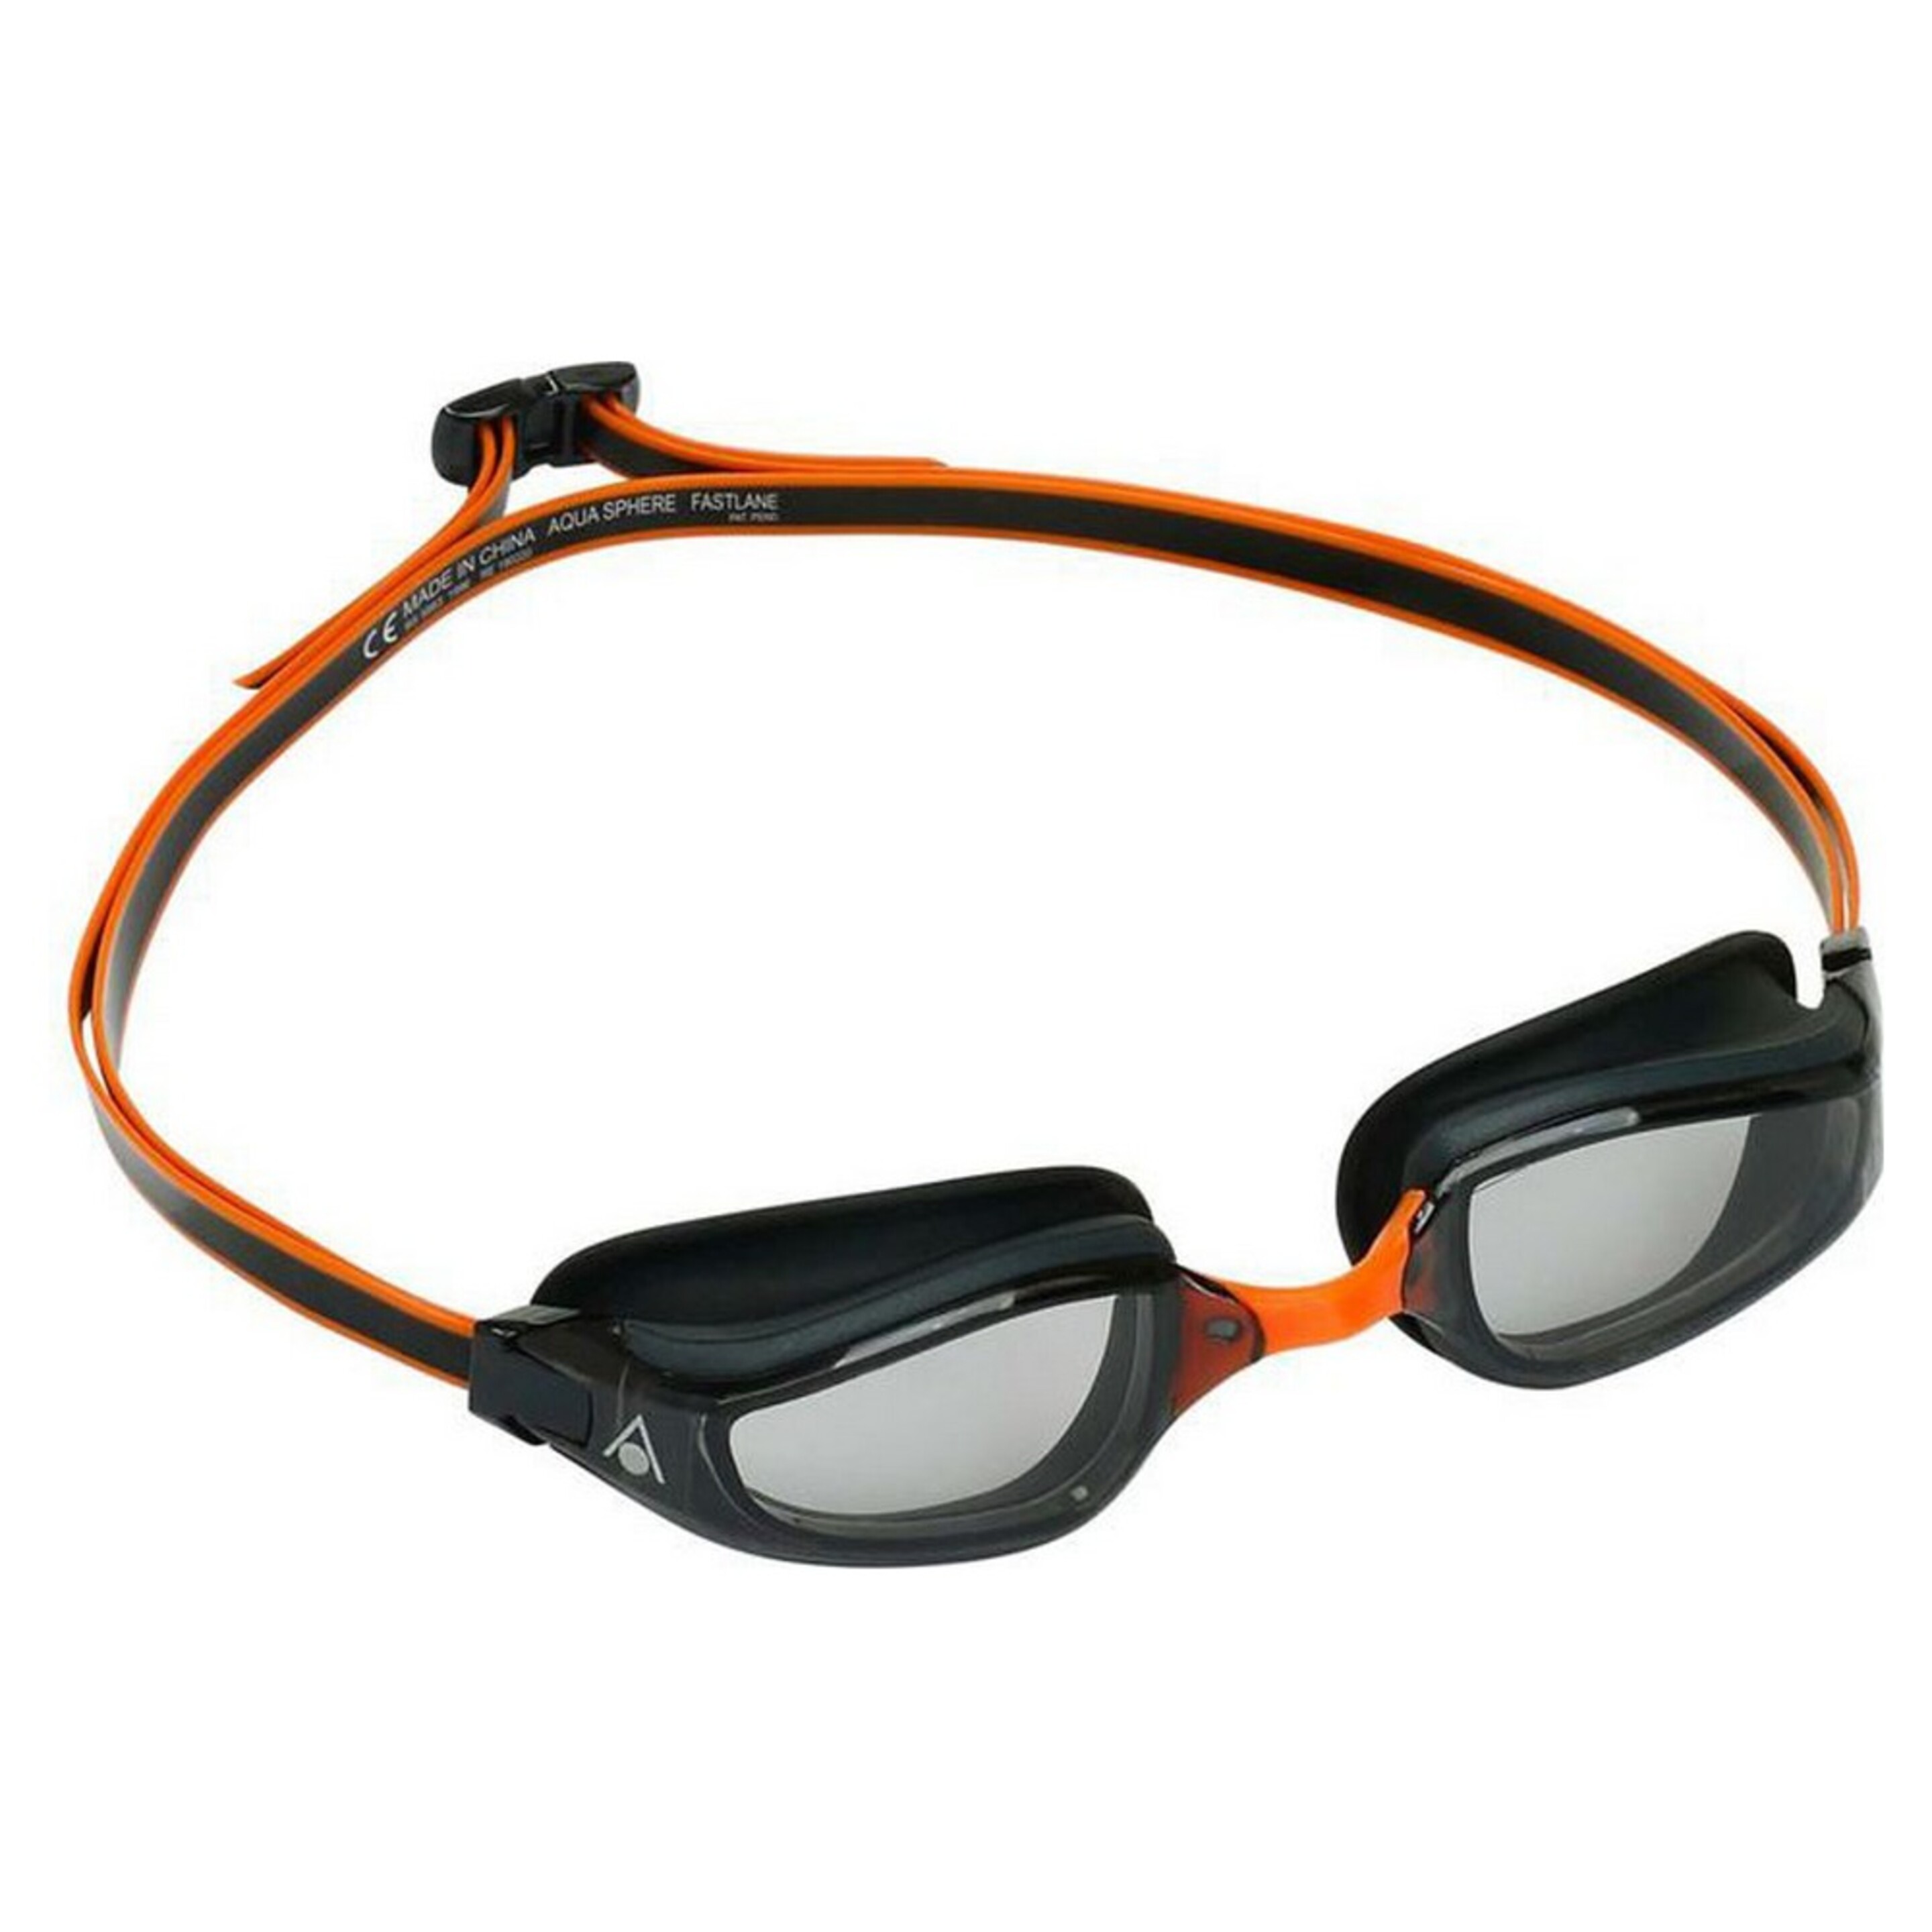 Gafas De Natación Aqua Sphere Fastlane - Naranja - Gafas De Natación 3665771036602  MKP